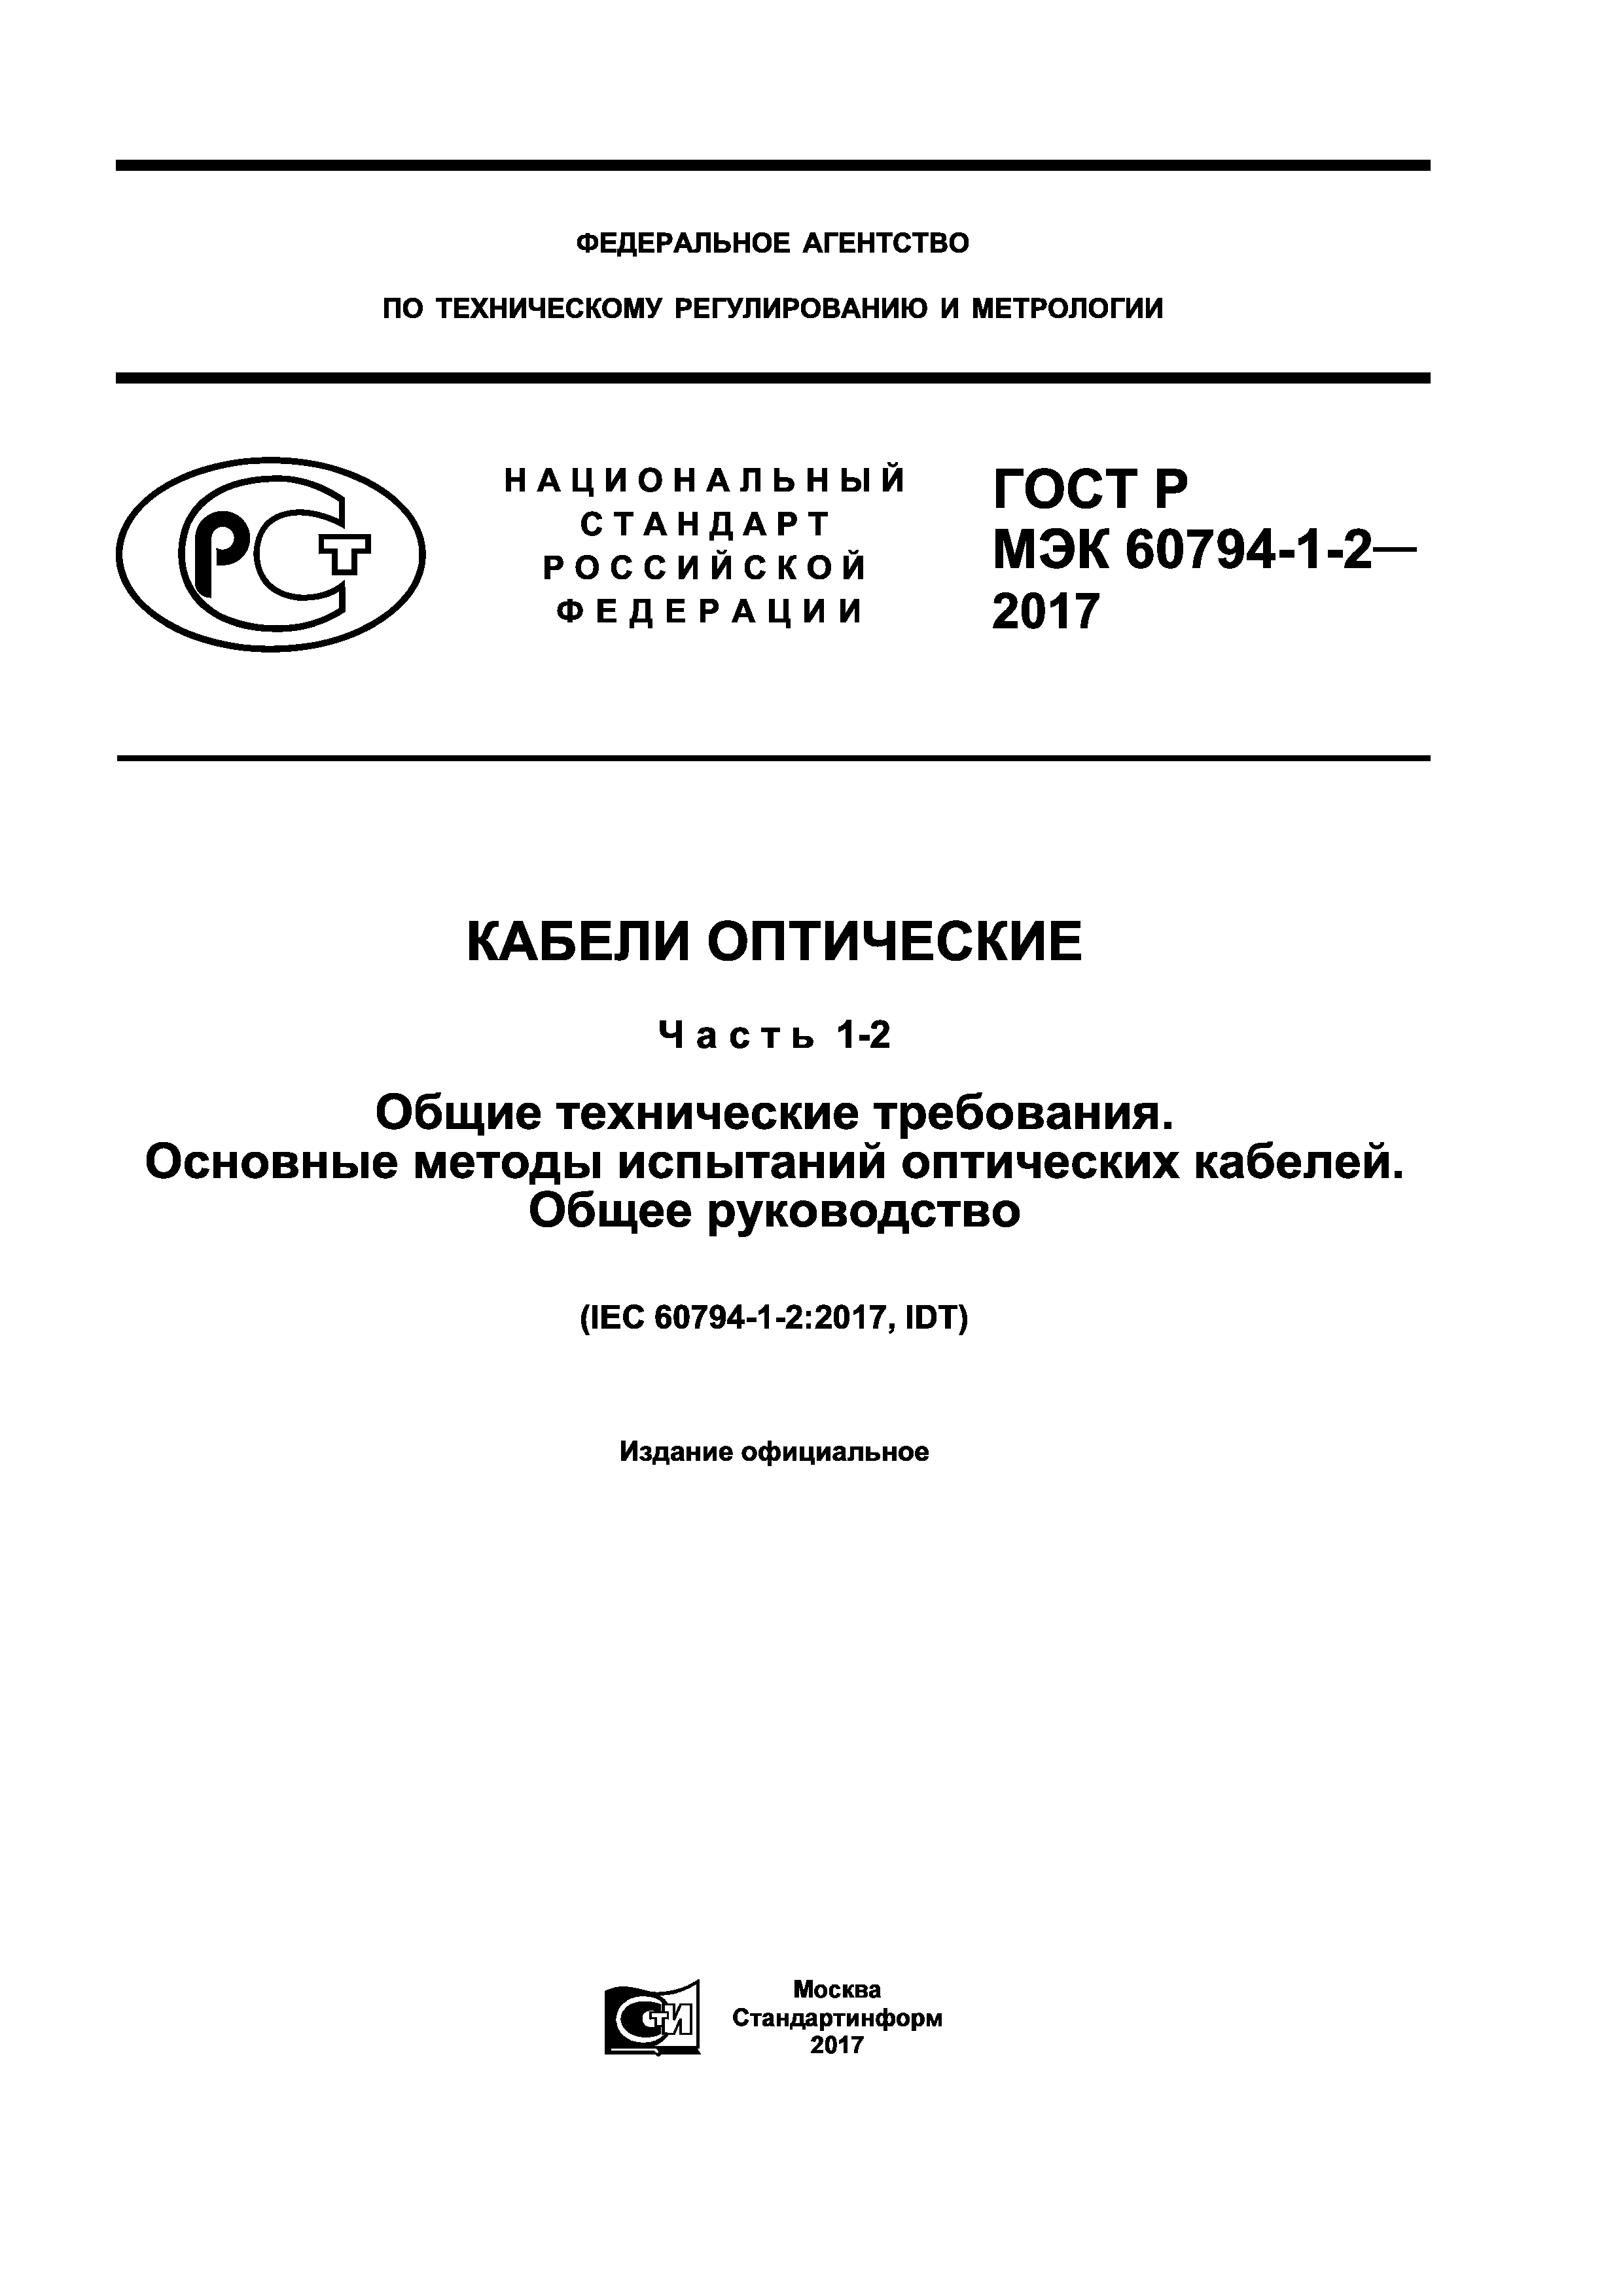 ГОСТ Р МЭК 60794-1-2-2017